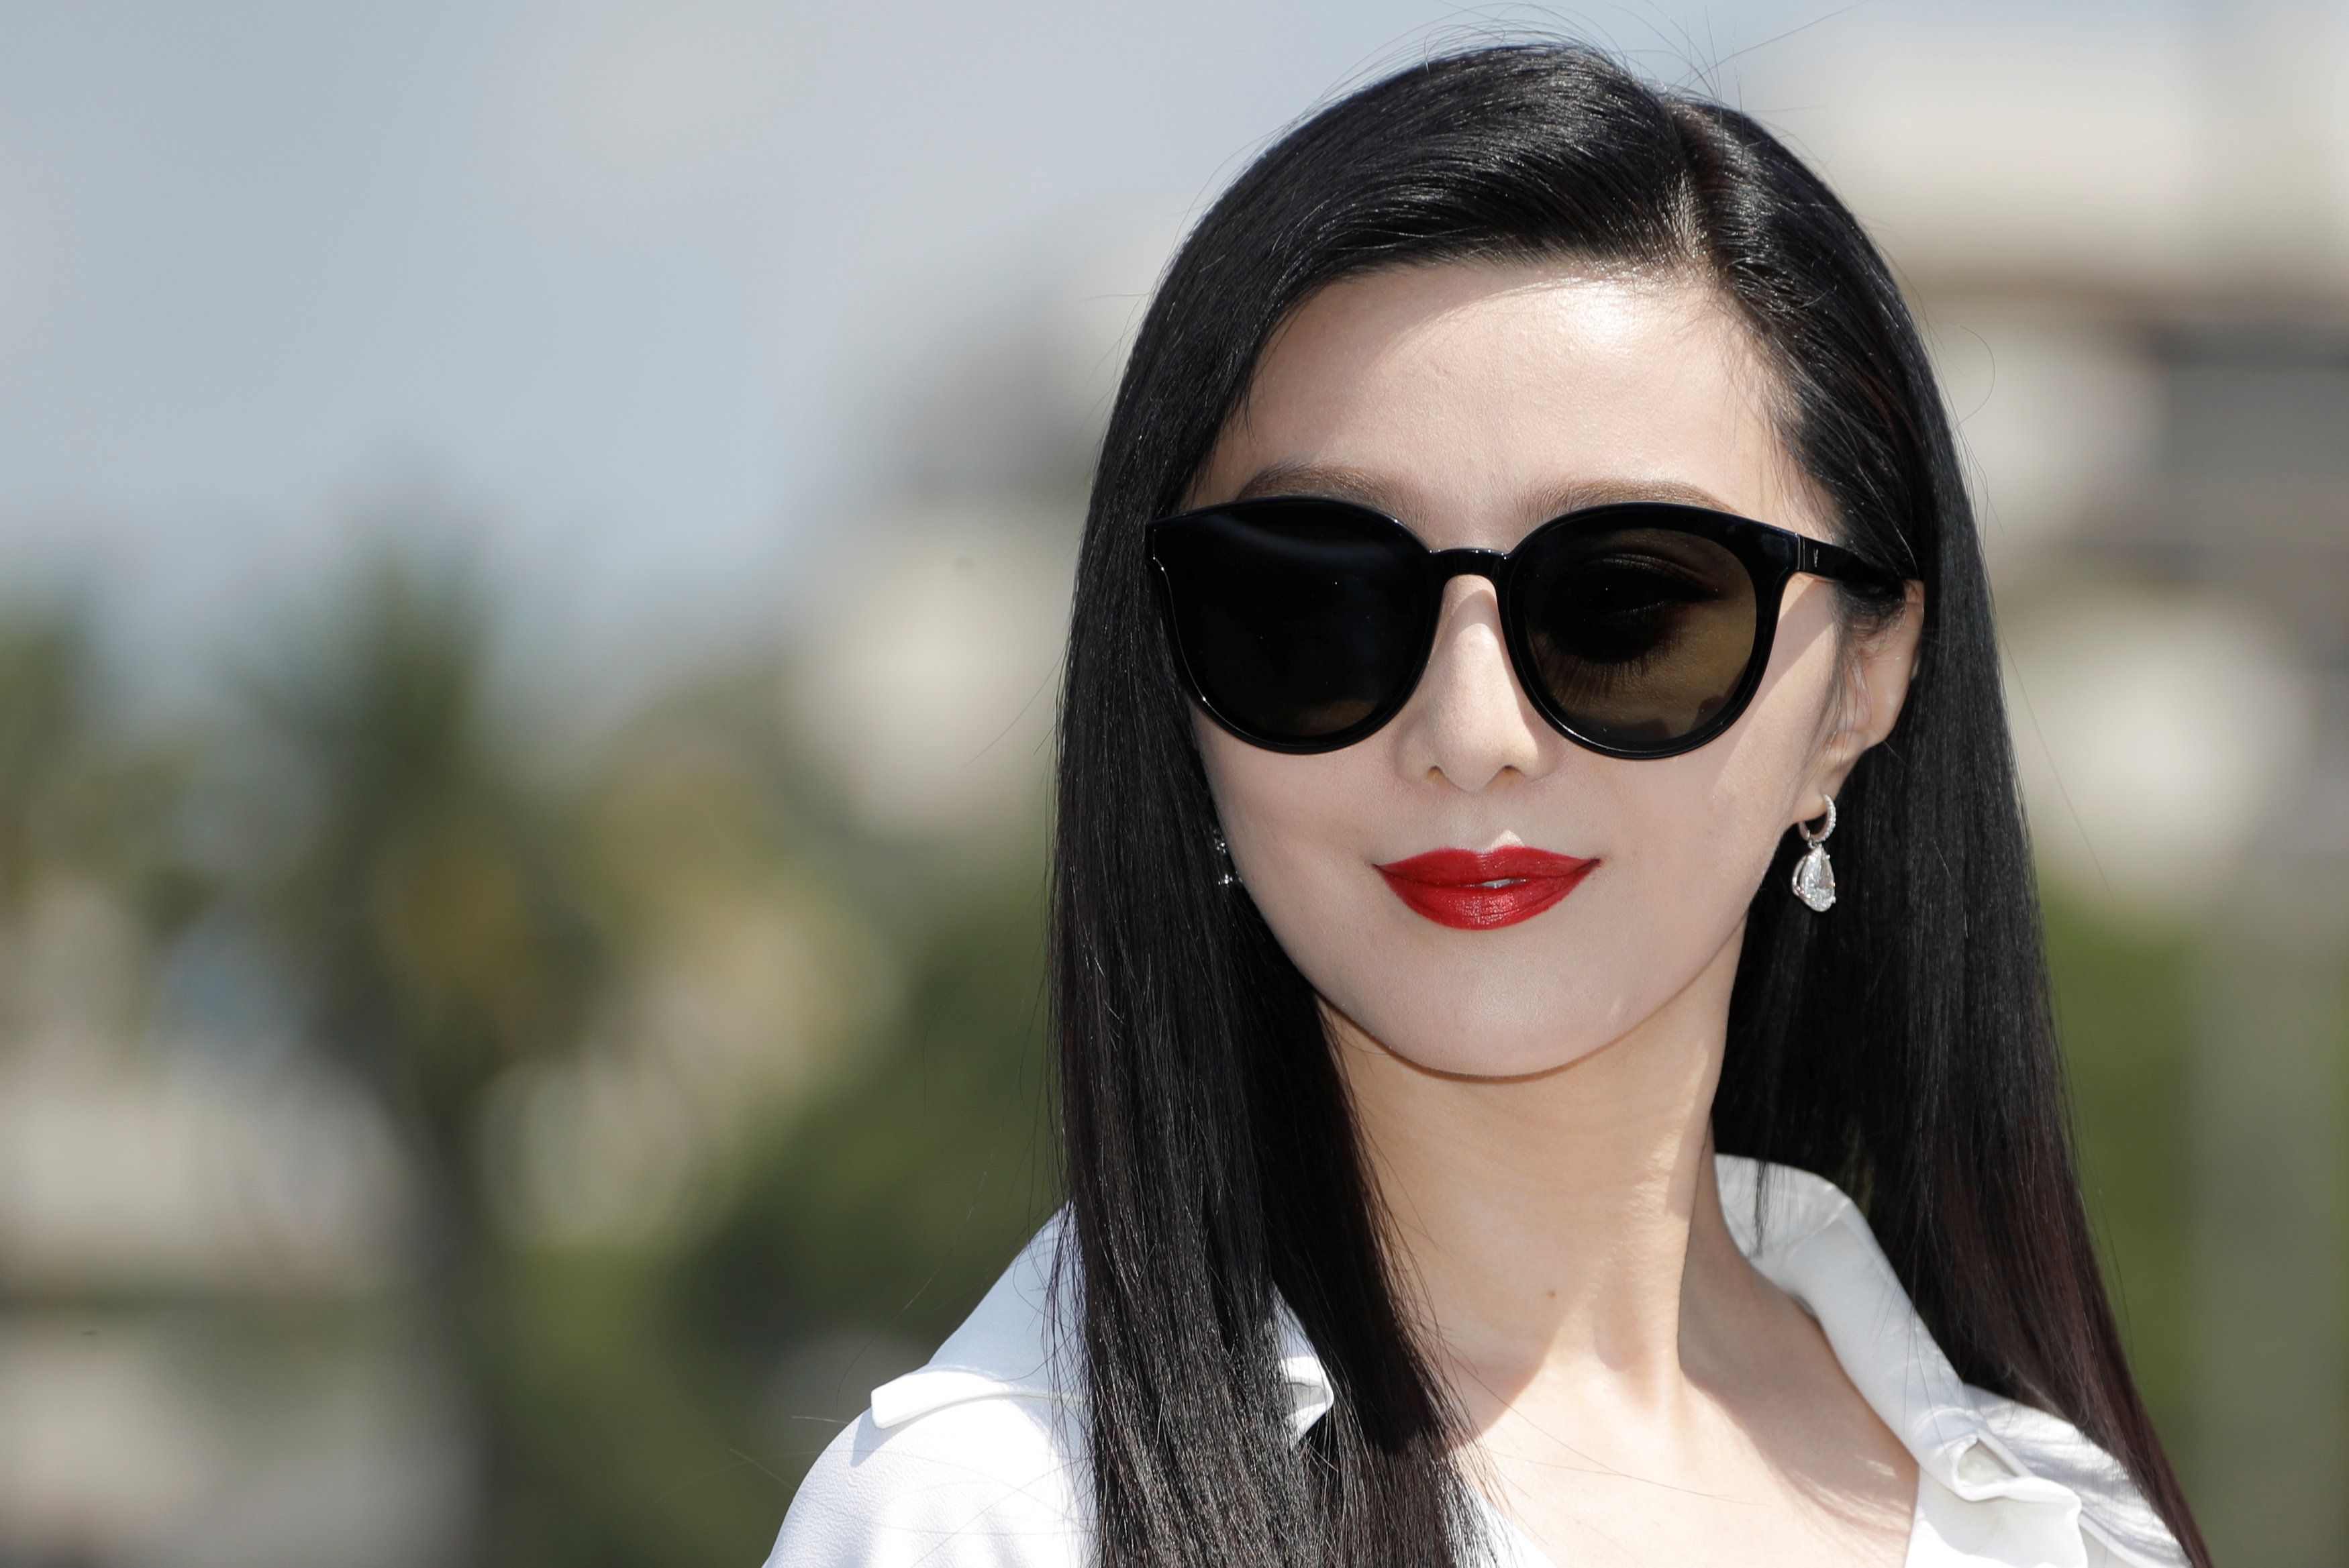 Chinese Actress Fan Bingbing Poses Fashion Show Held Louis Vuitton